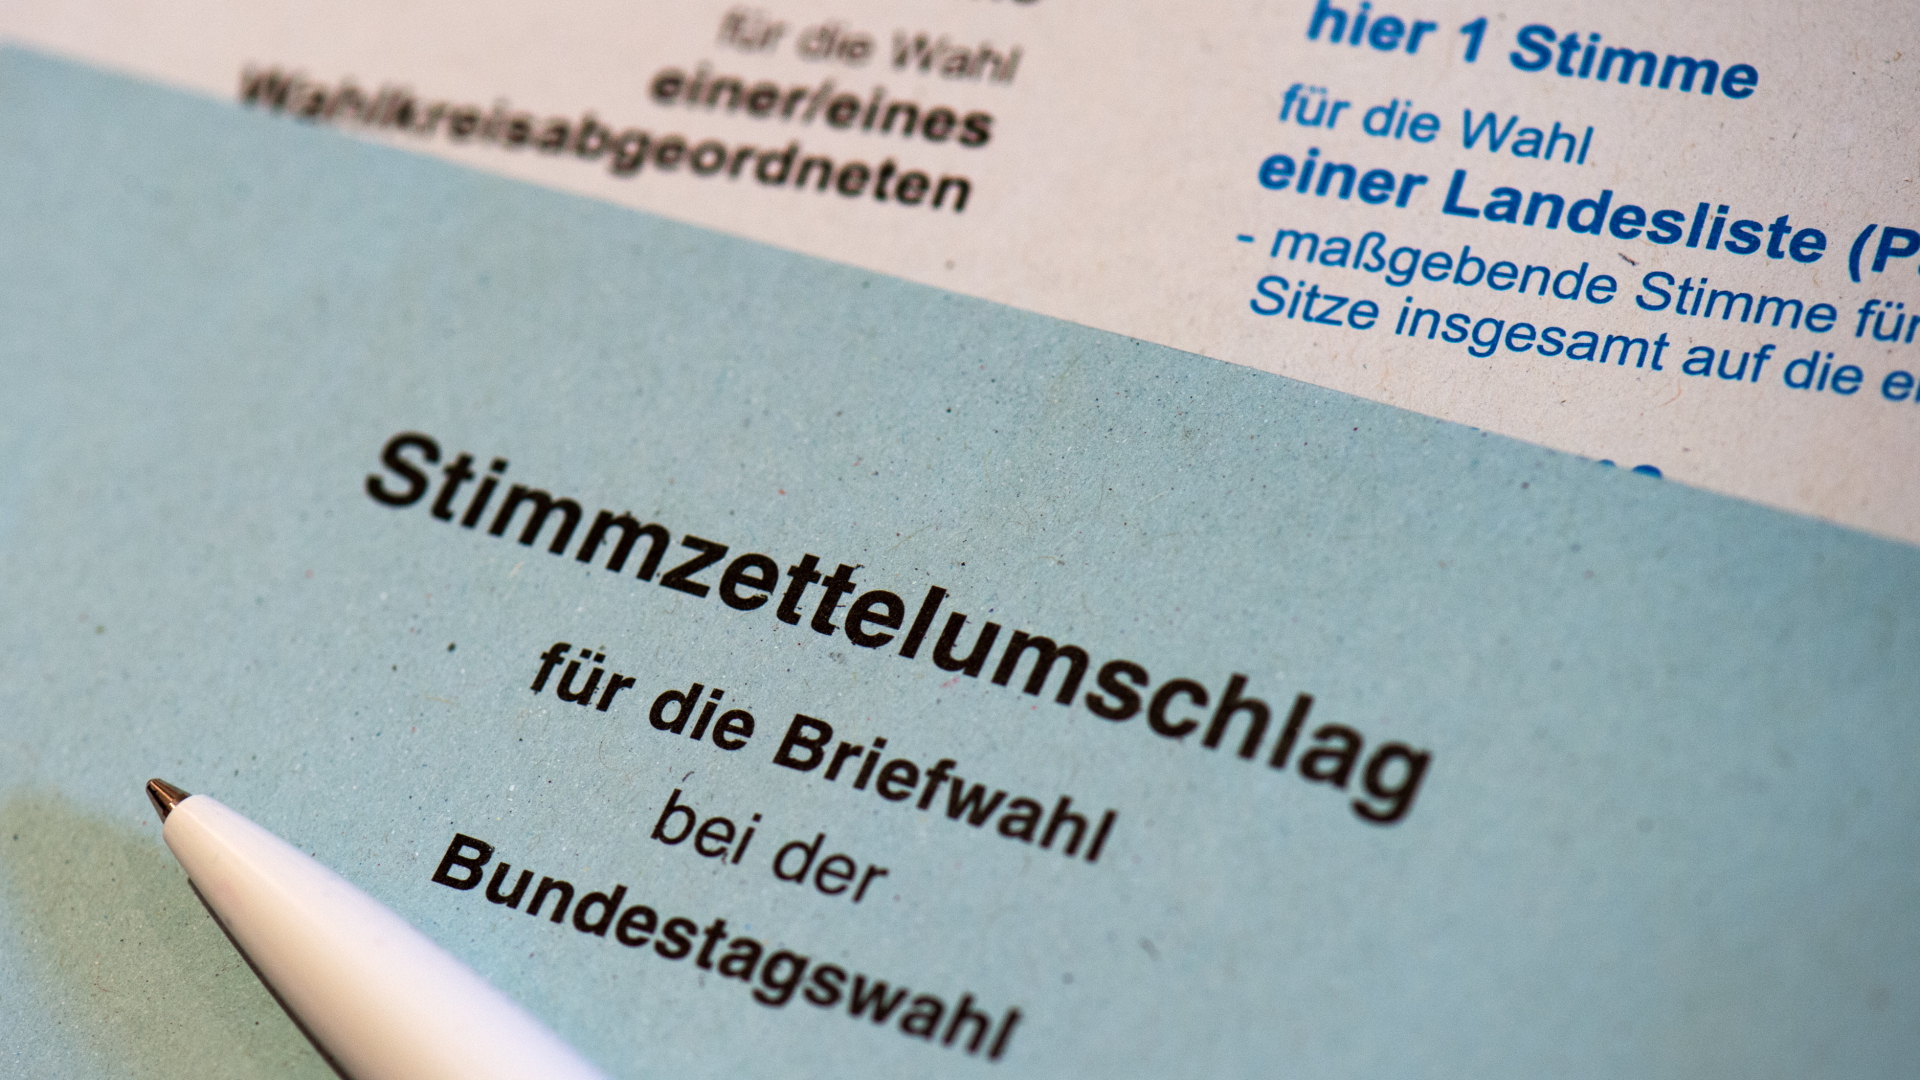 Briefwahl-Unterlagen der Bundestagswahl 2017 | dpa